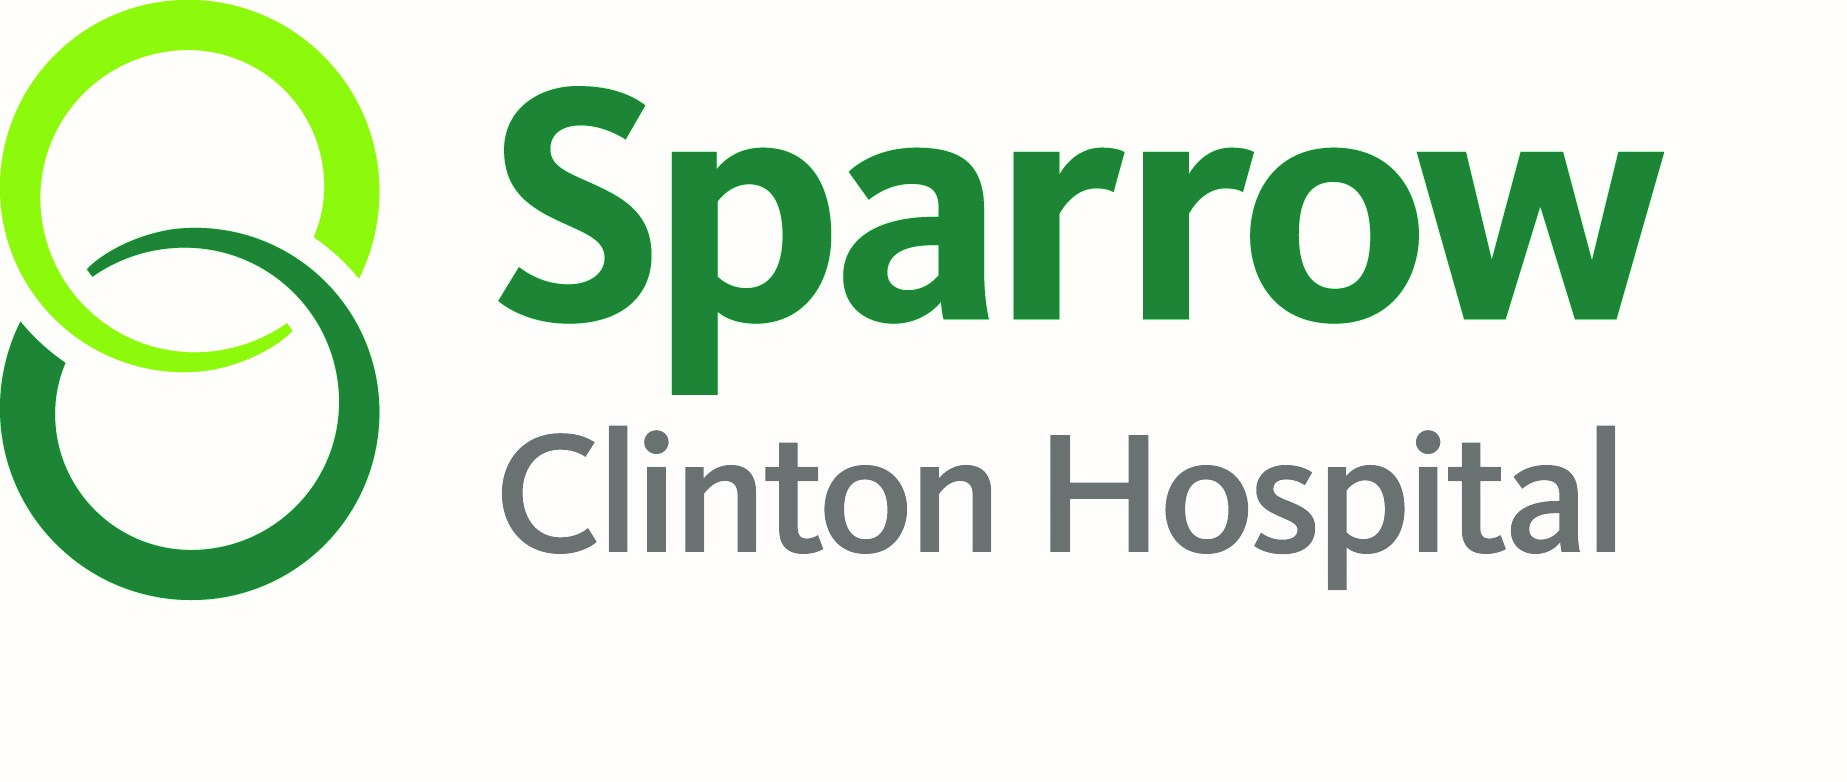 Sparrow Clinton Hospital